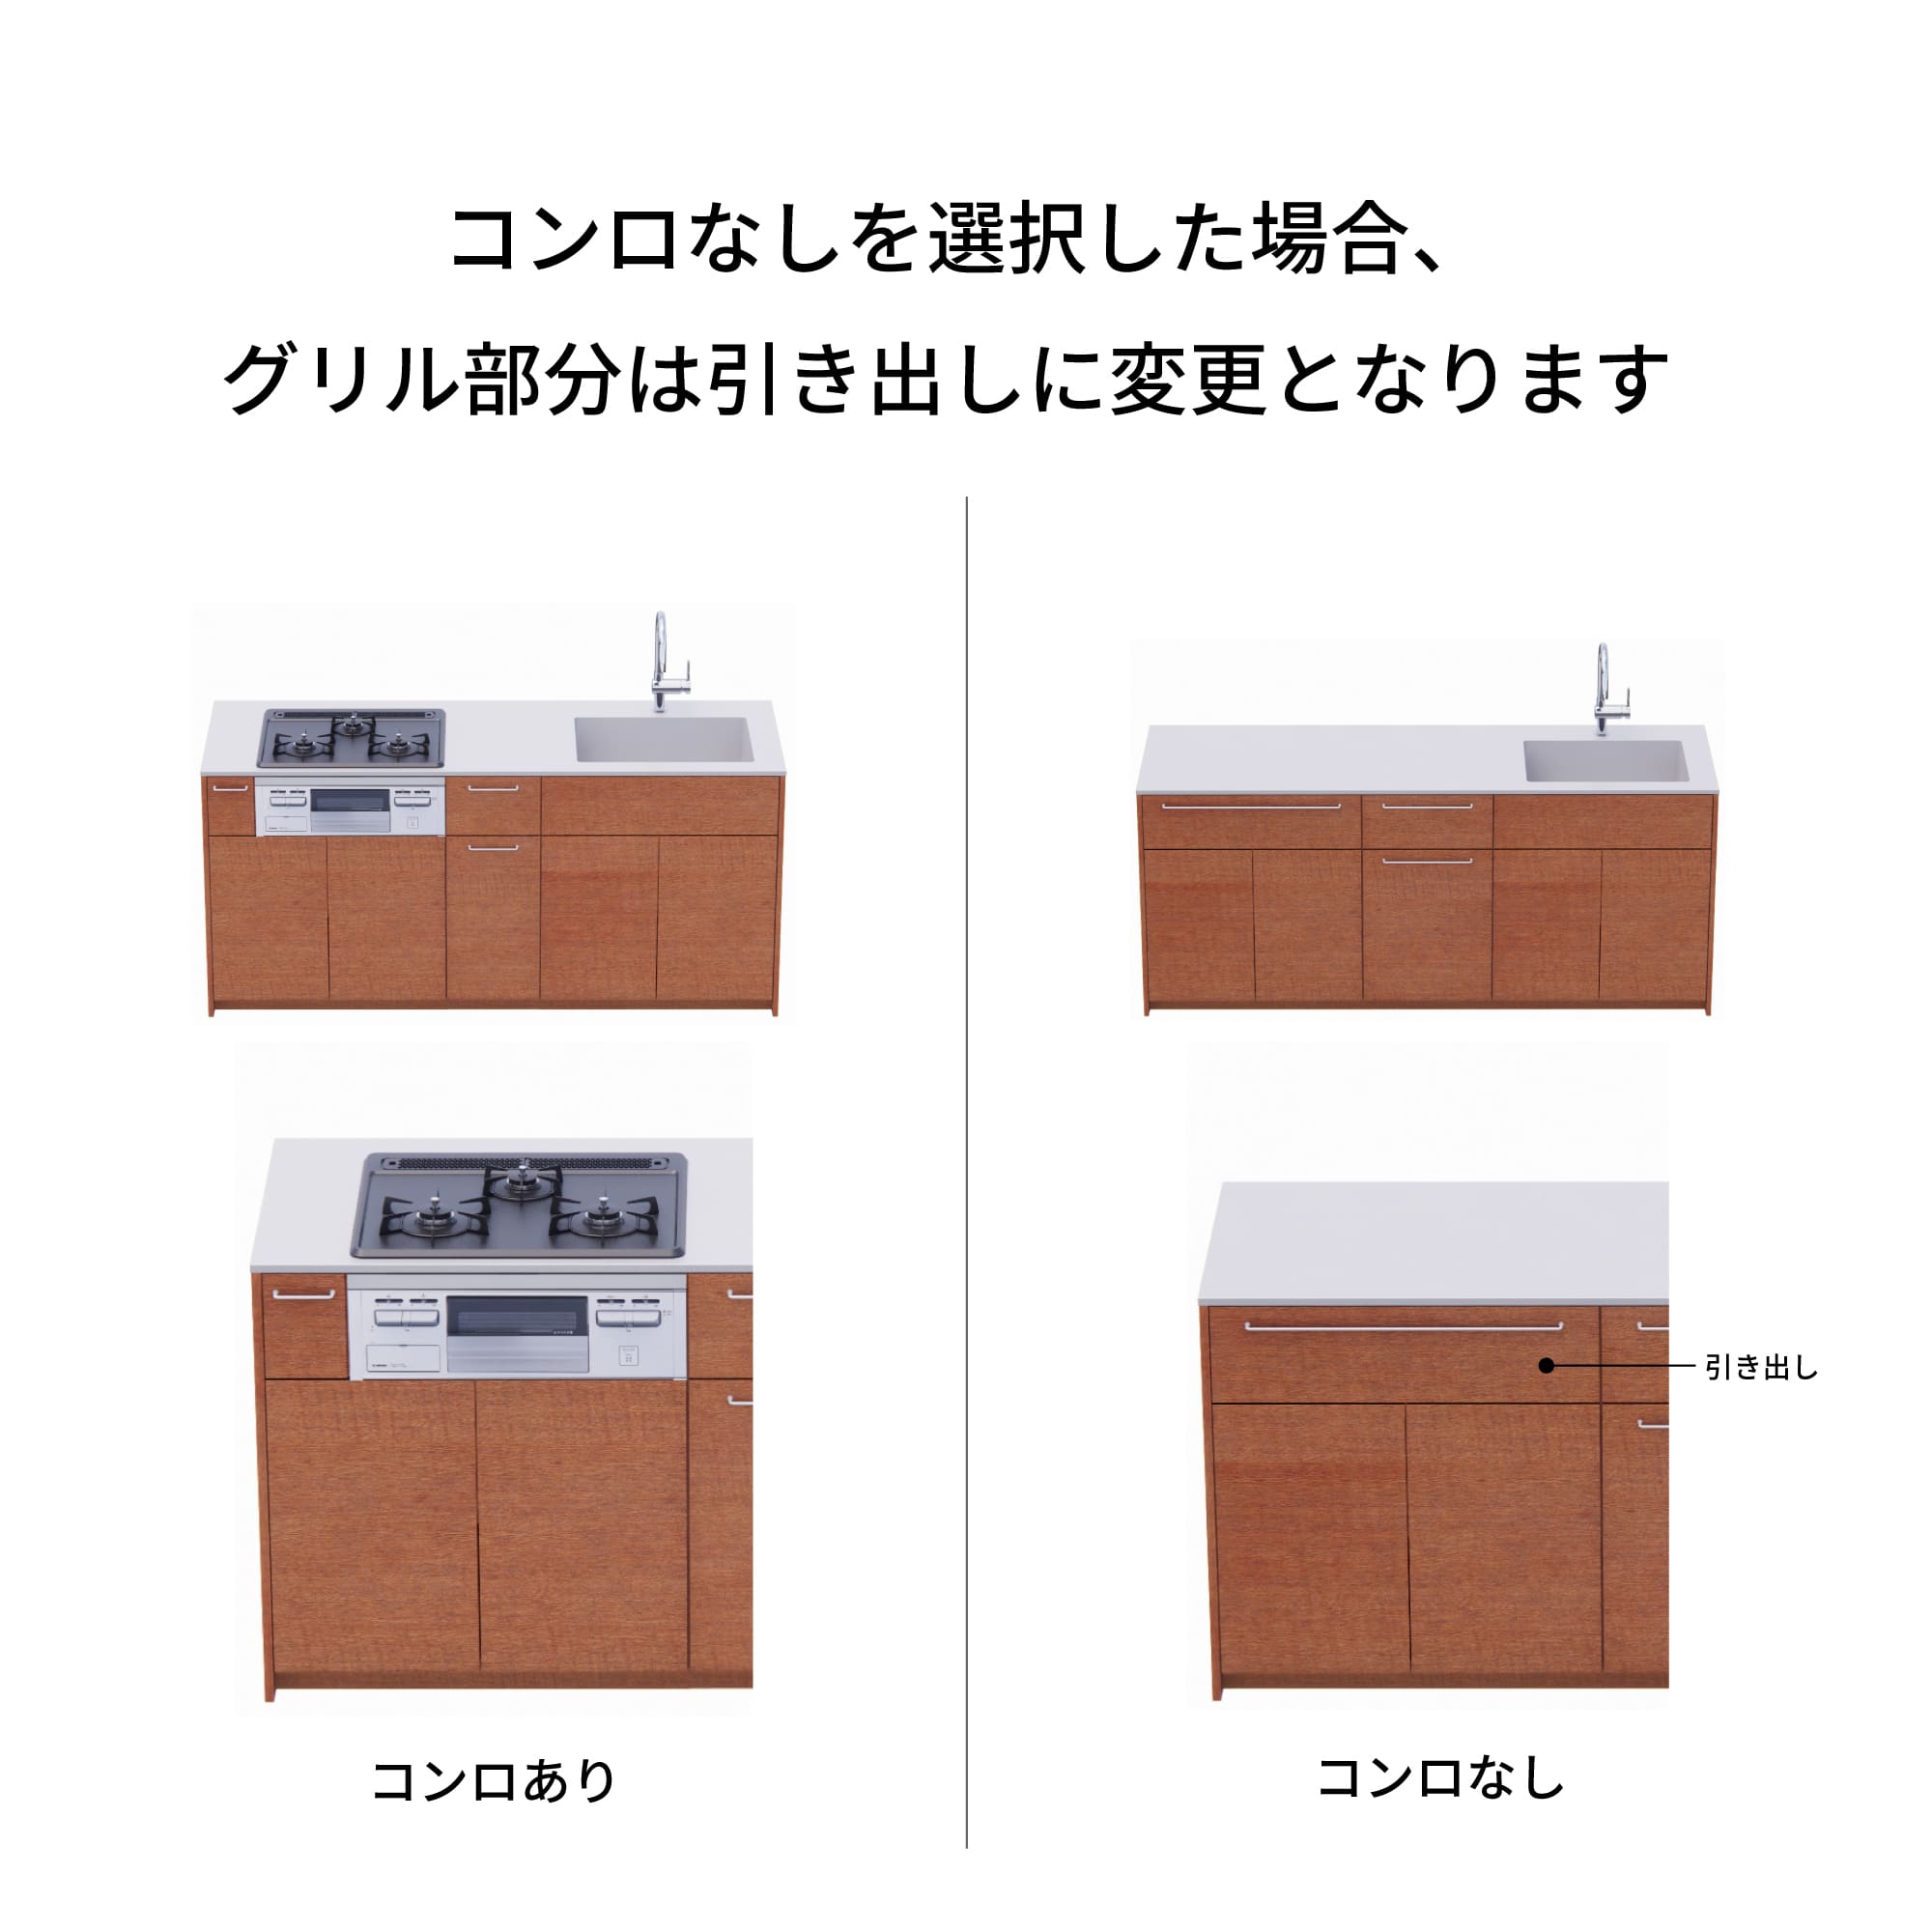 木製システムキッチン 壁付け型 W2140～2290・コンロなし / オーブンなし / 食洗機あり KB-KC022-21-G183 コンロ無しの場合、通常魚焼きグリルがある部分は引き出しになっています